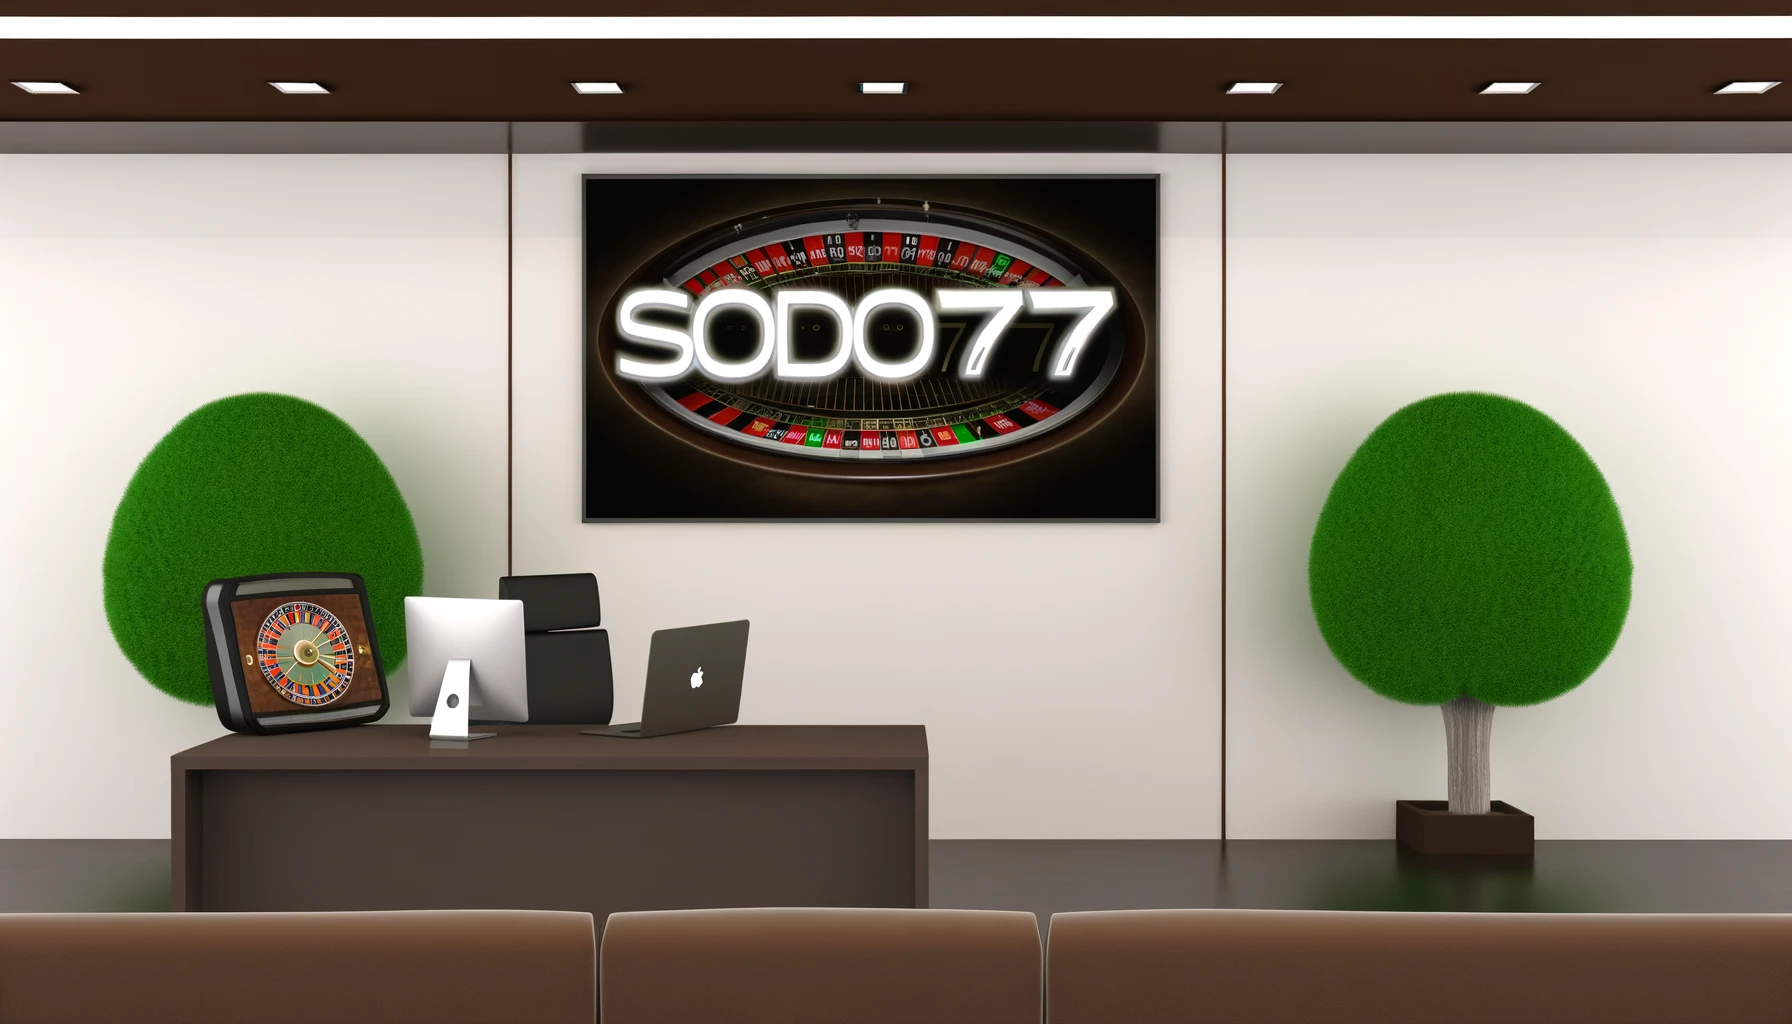 Sodo777 Casino Online là nhà cái uy tín hàng đầu Việt Nam